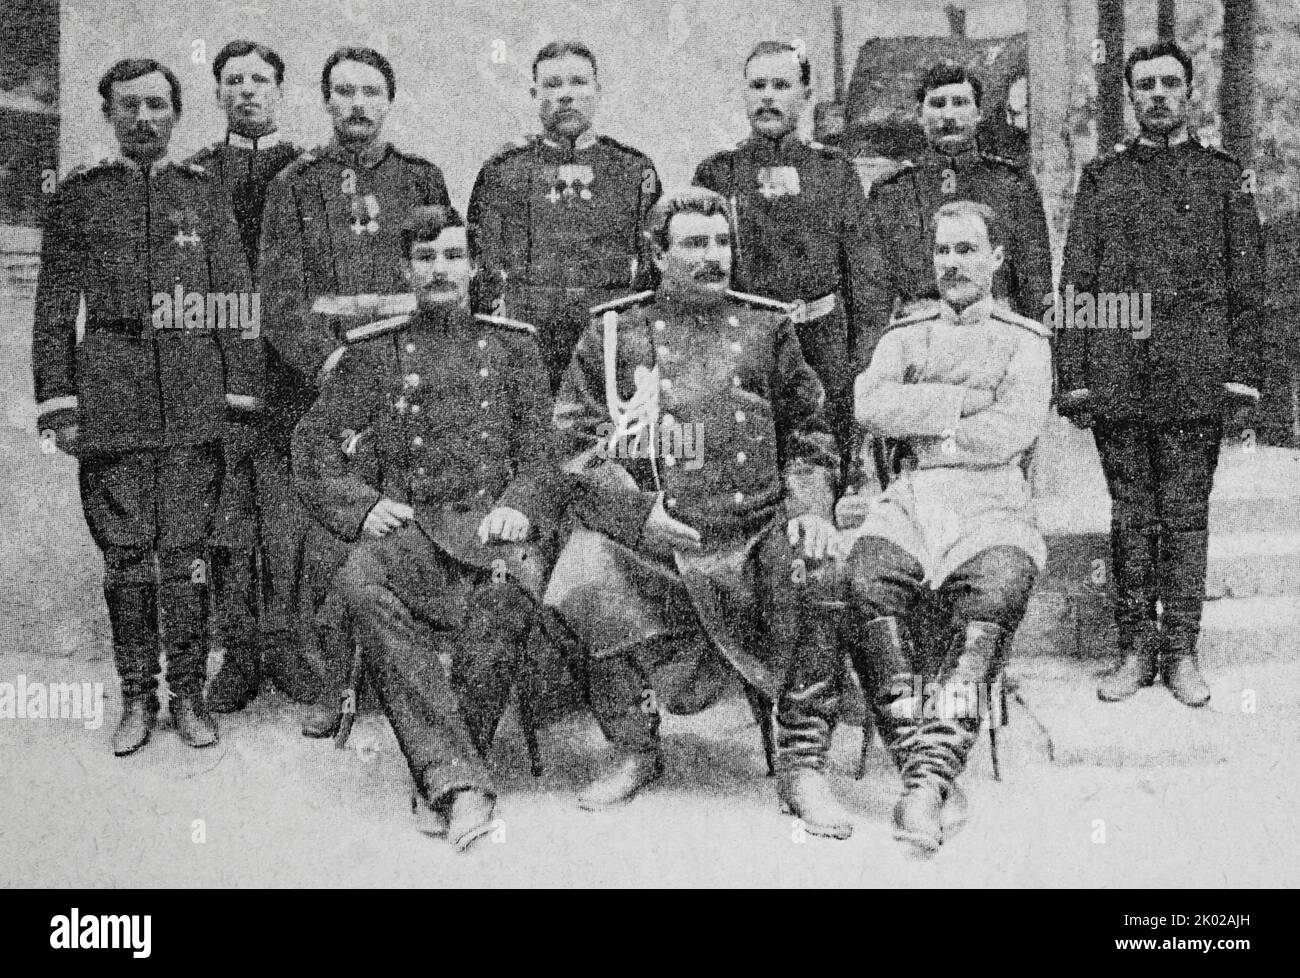 Un gruppo di partecipanti alla spedizione di N.M. Przhevalsky. Seduta (da sinistra a destra): P.K. Kozlov, N.M. Przhevalsky, V.I. Roborovsky. Foto del 80s del 19th ° secolo. Foto Stock